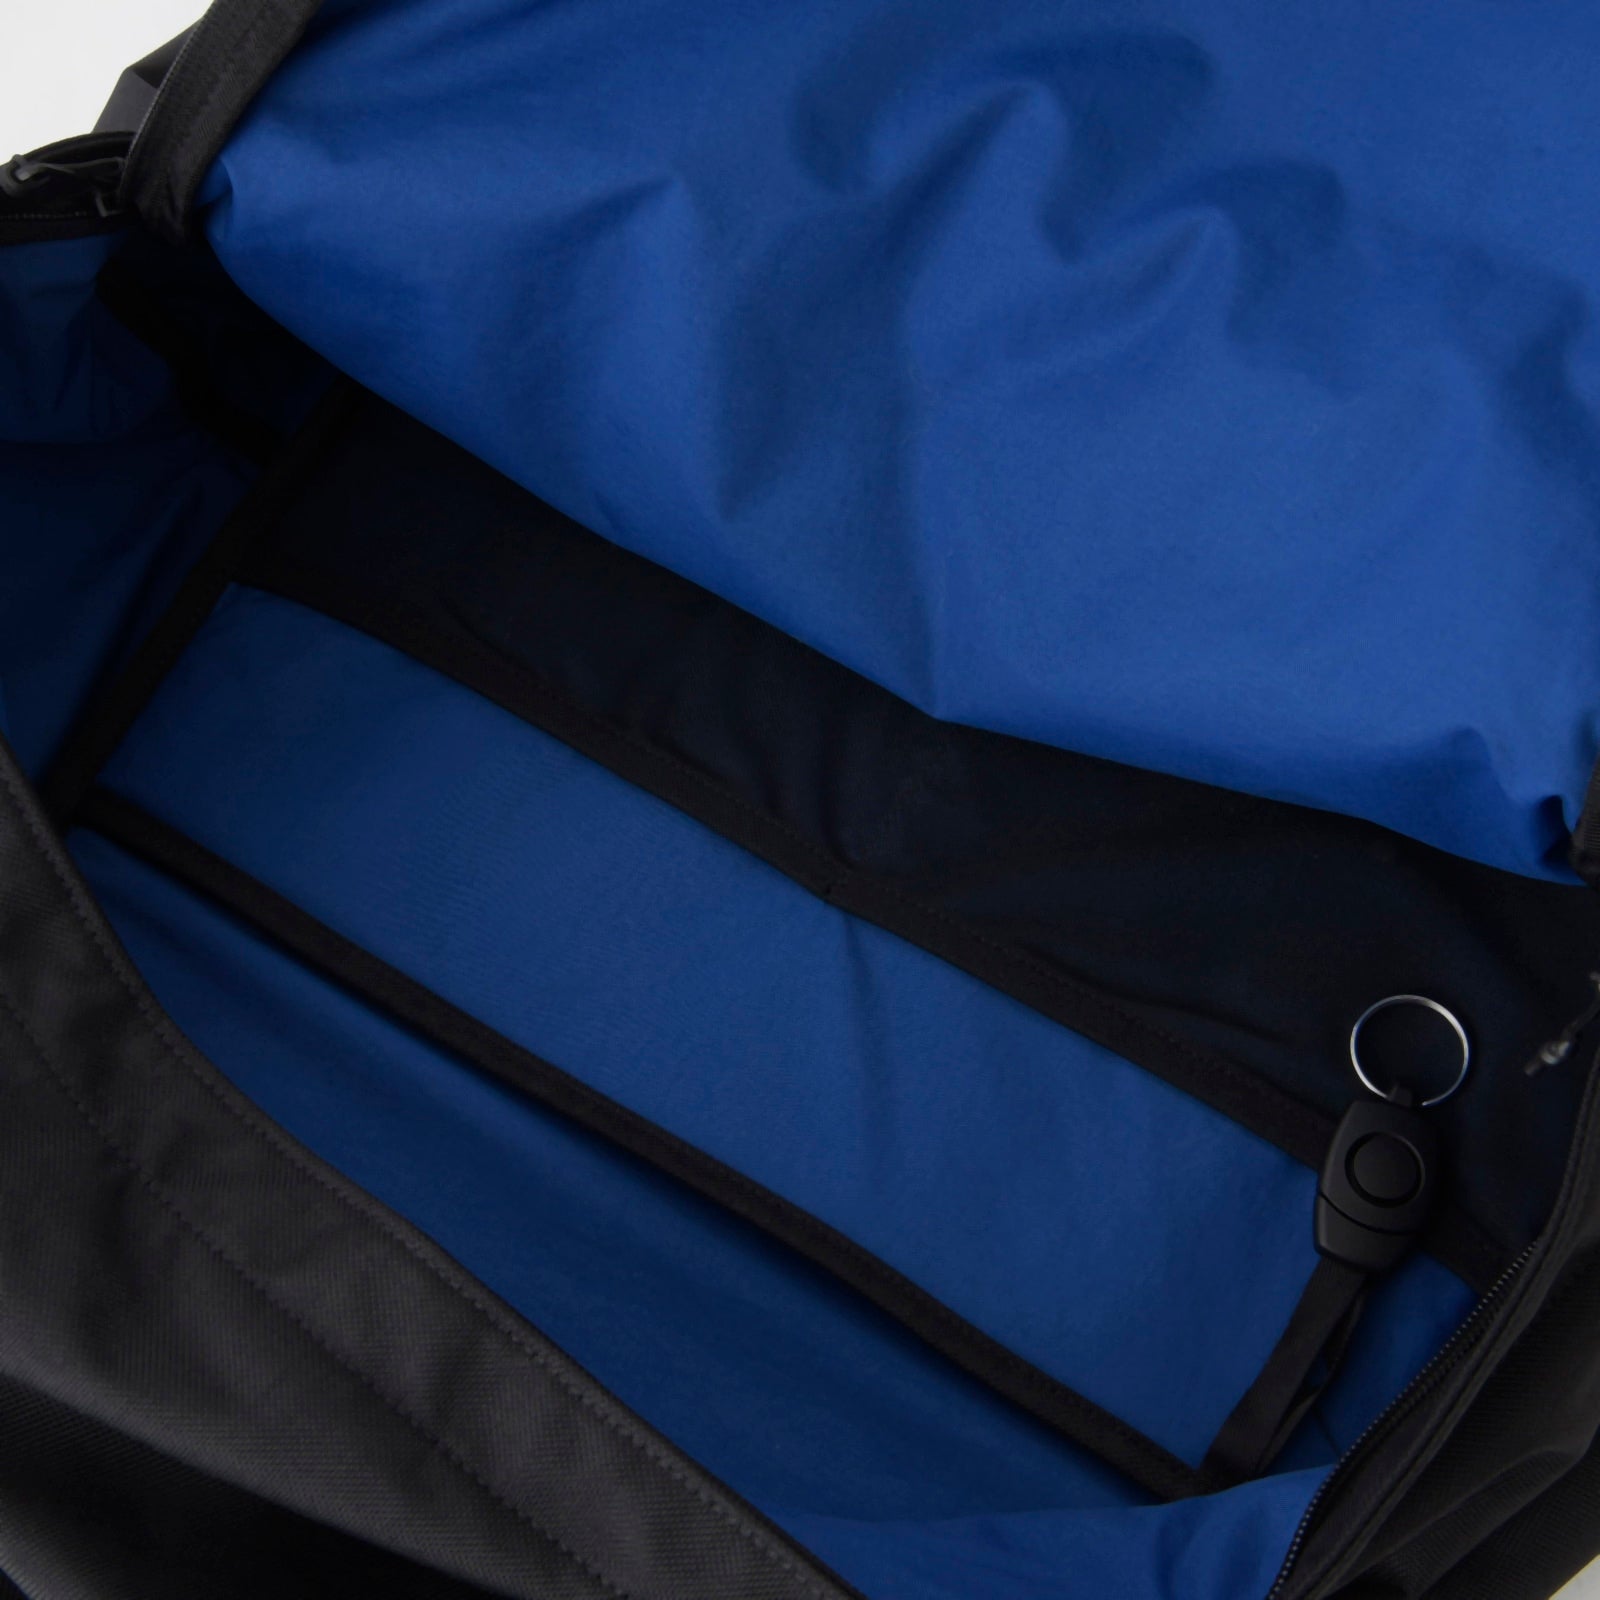 MET24 Backpack30L